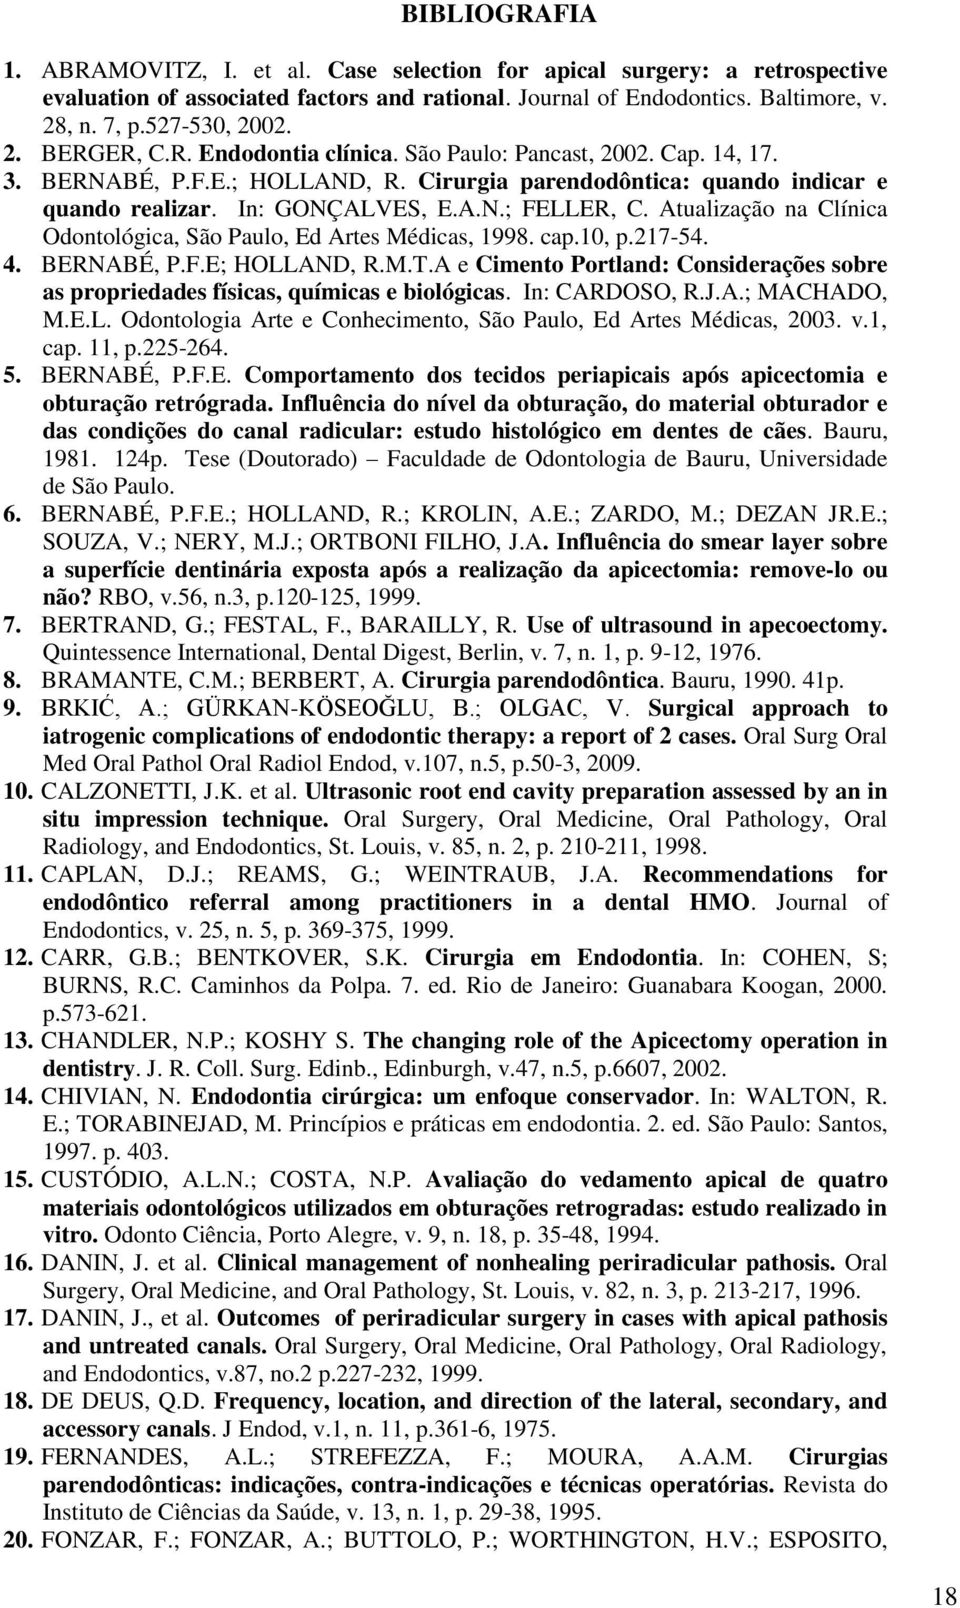 Atualização na Clínica Odontológica, São Paulo, Ed Artes Médicas, 1998. cap.10, p.217-54. 4. BERNABÉ, P.F.E; HOLLAND, R.M.T.